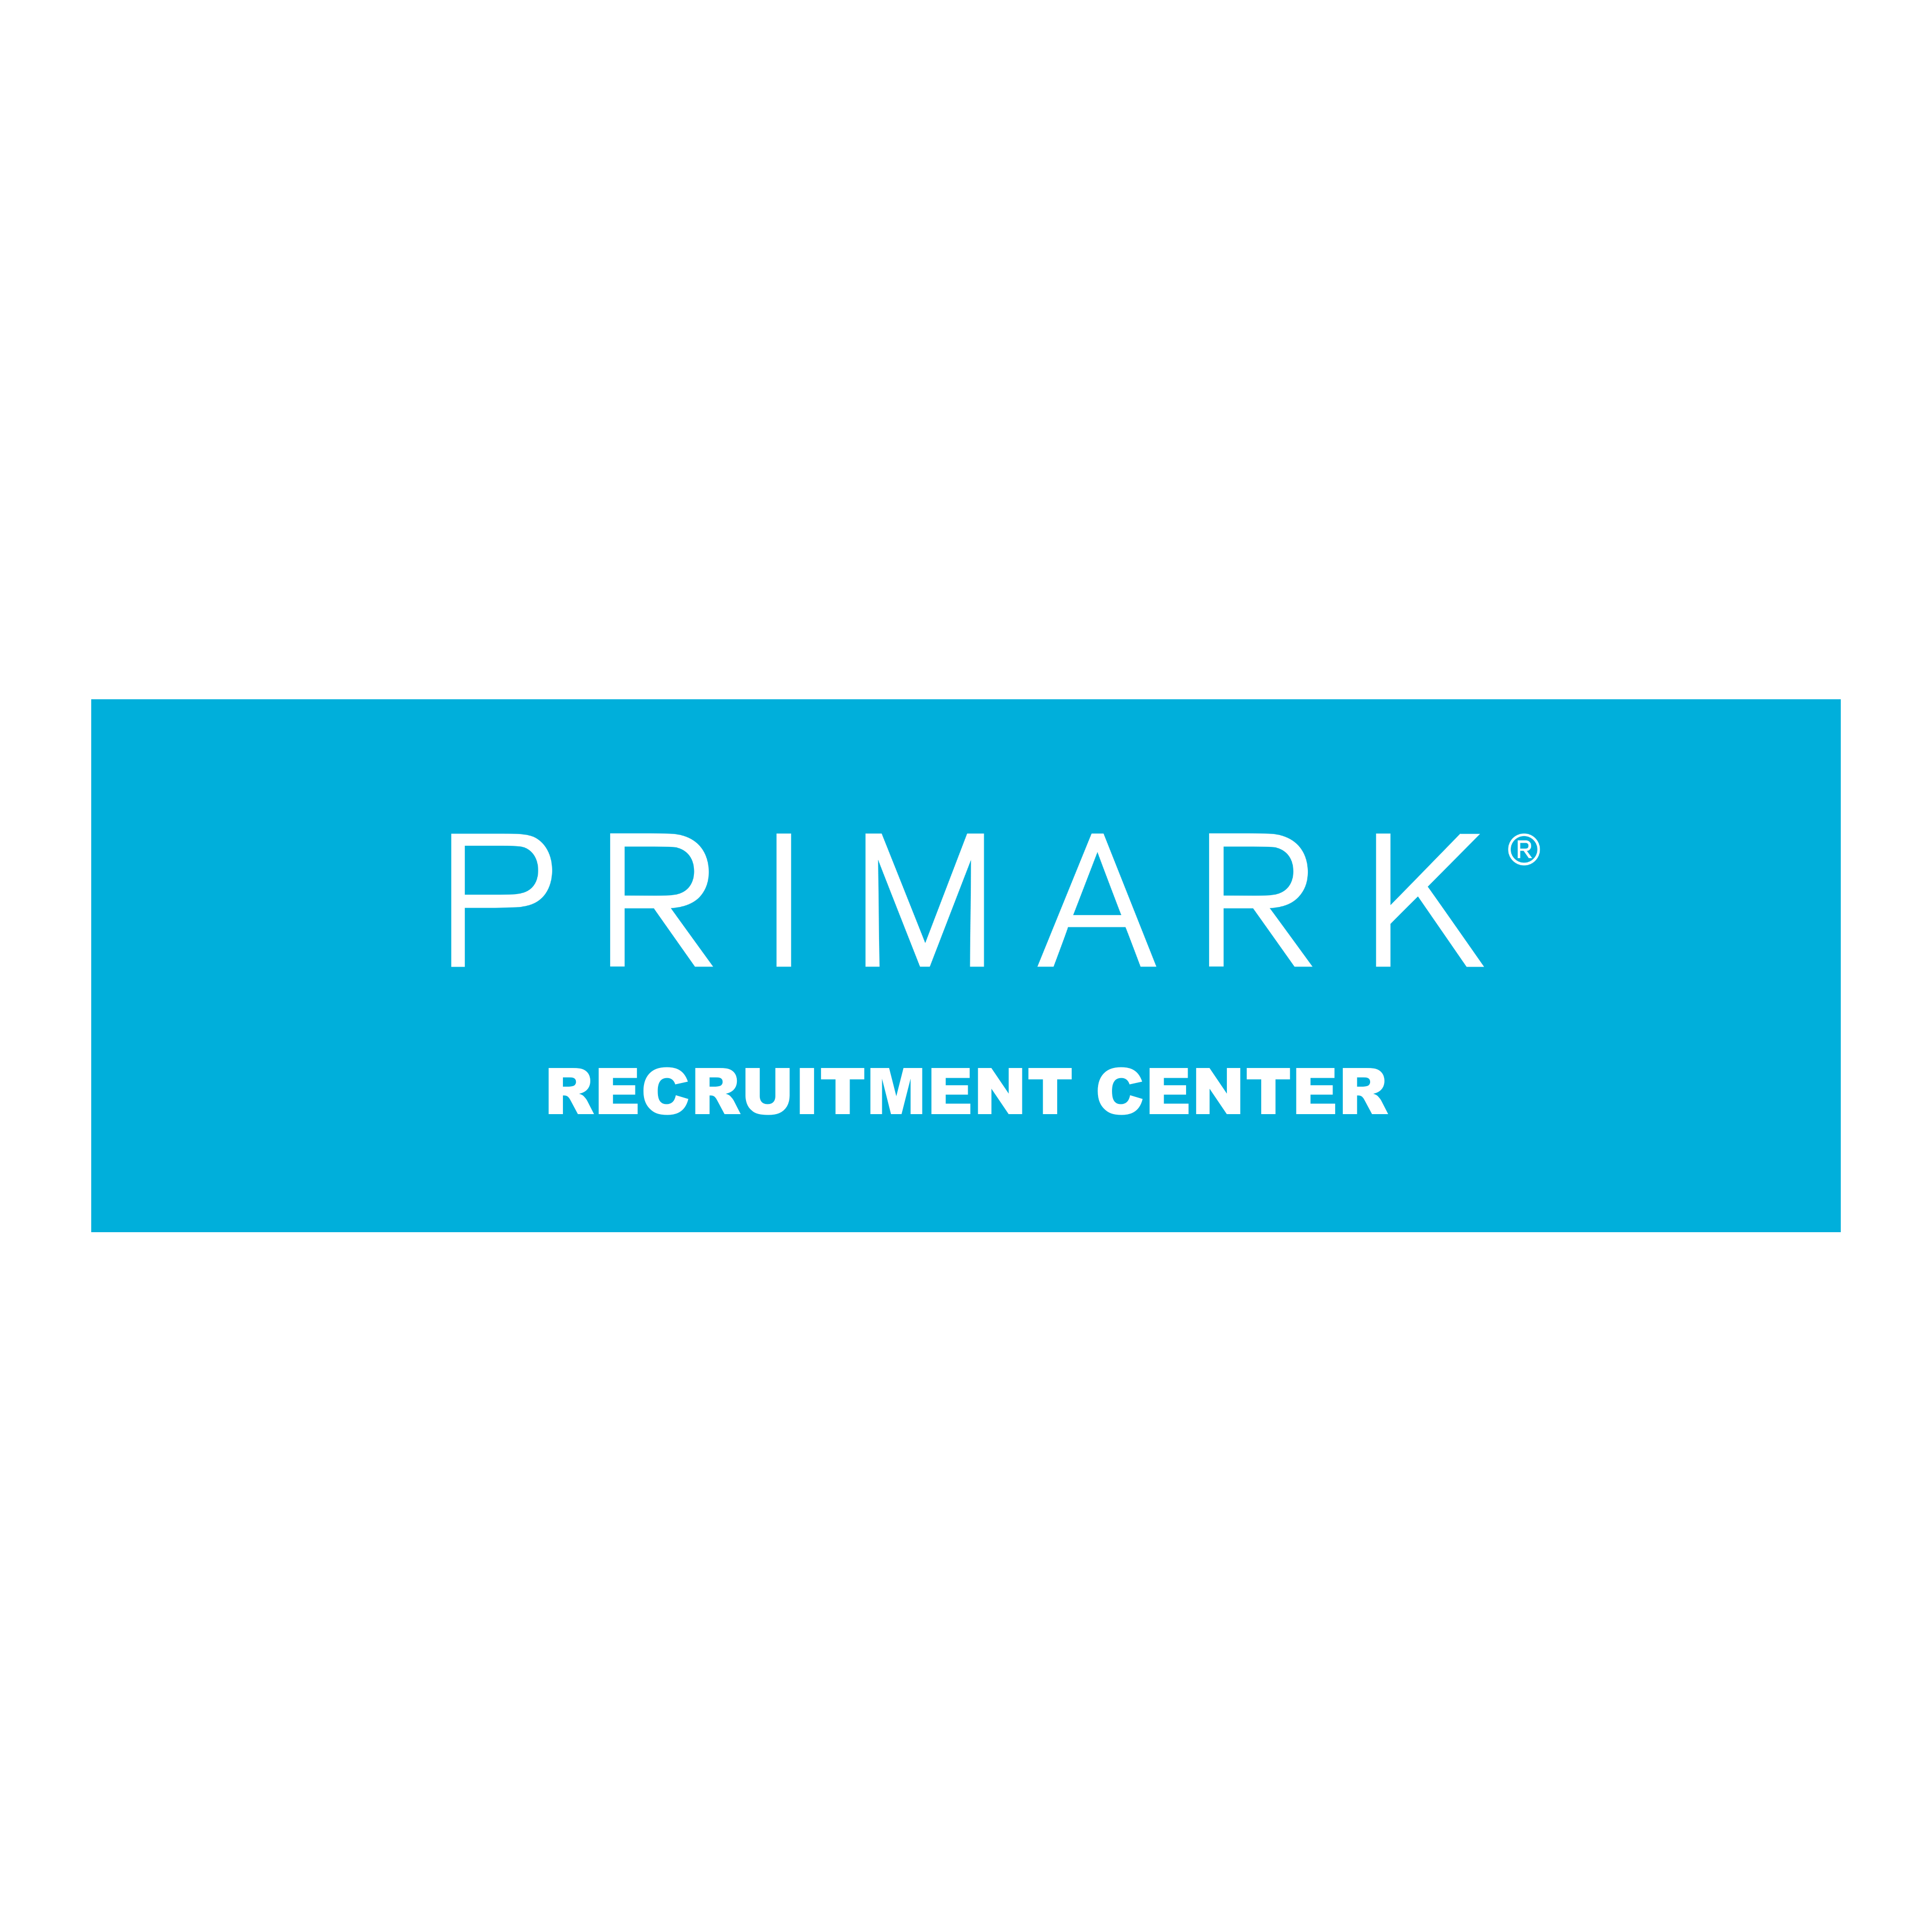 Primark Recruitment Center